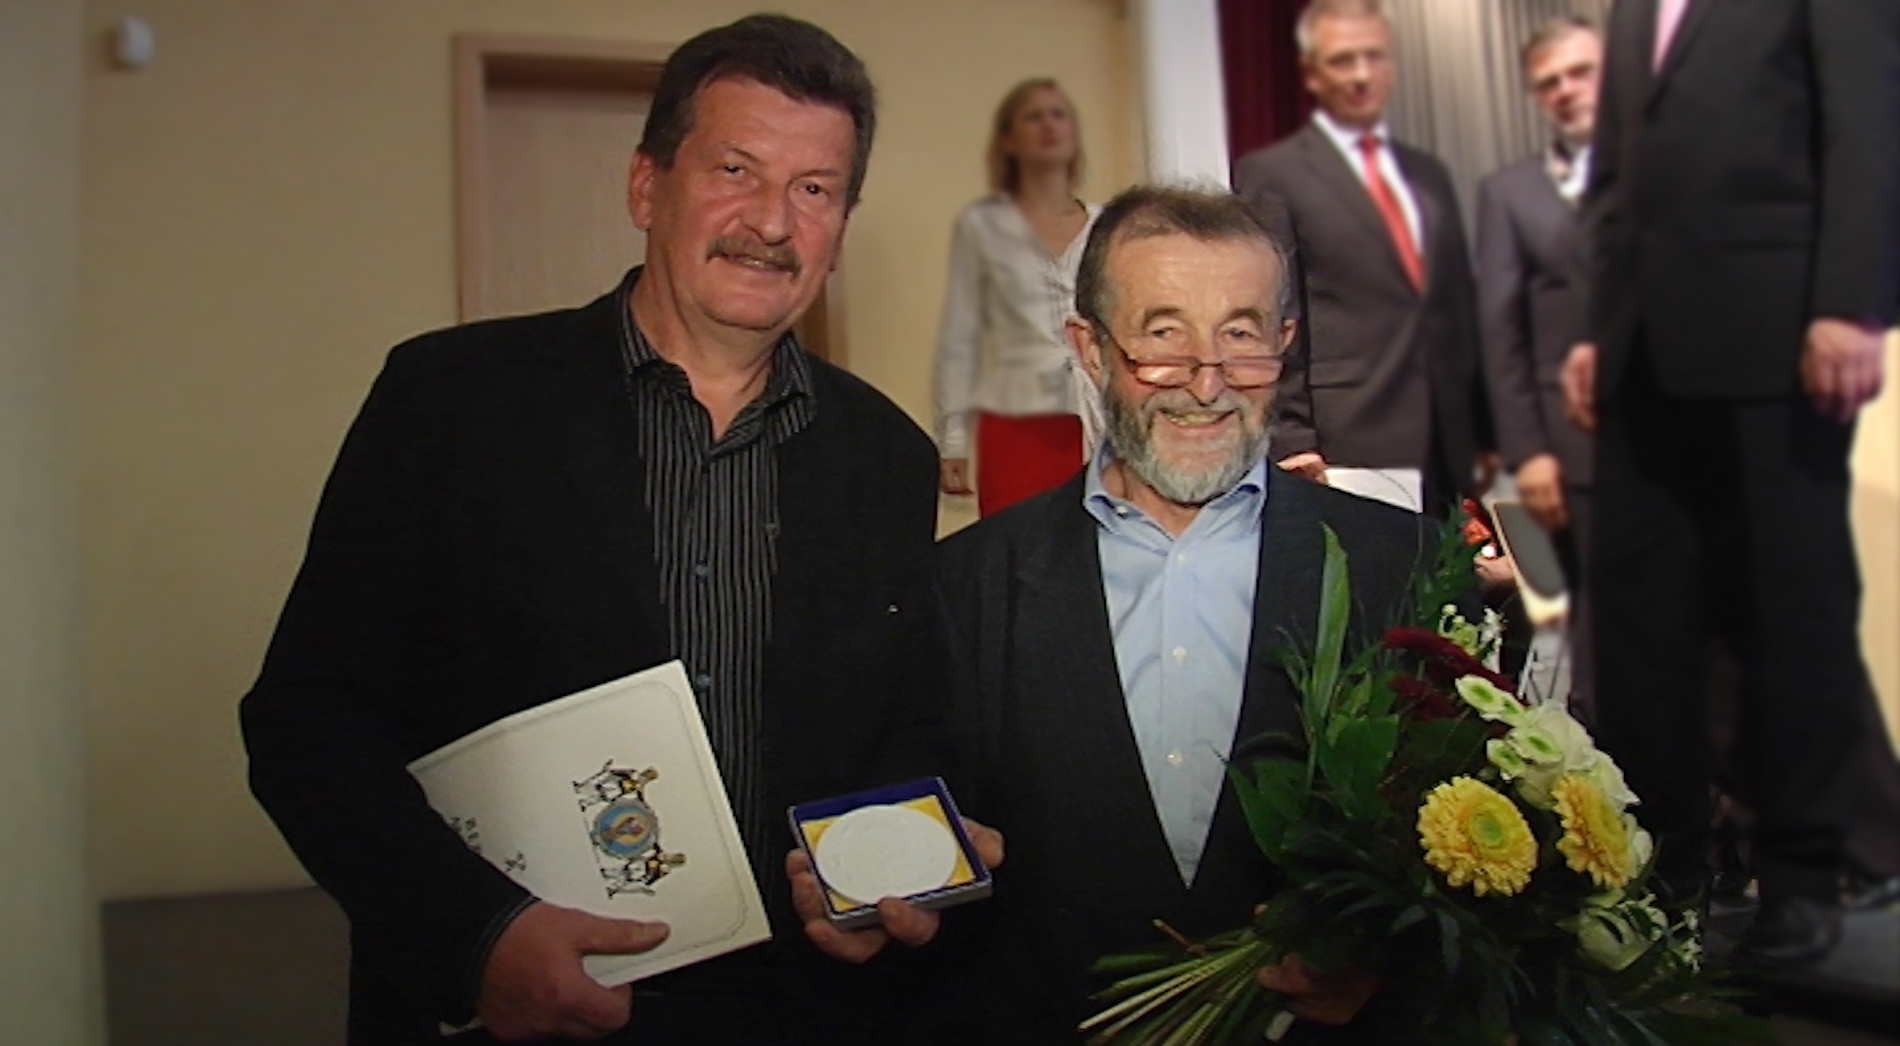 Gründer Günter Rötzer (r.) und Macher Günter Langer nahmen die Ehrenplakette der Stadt Marienberg in weiß entgegen